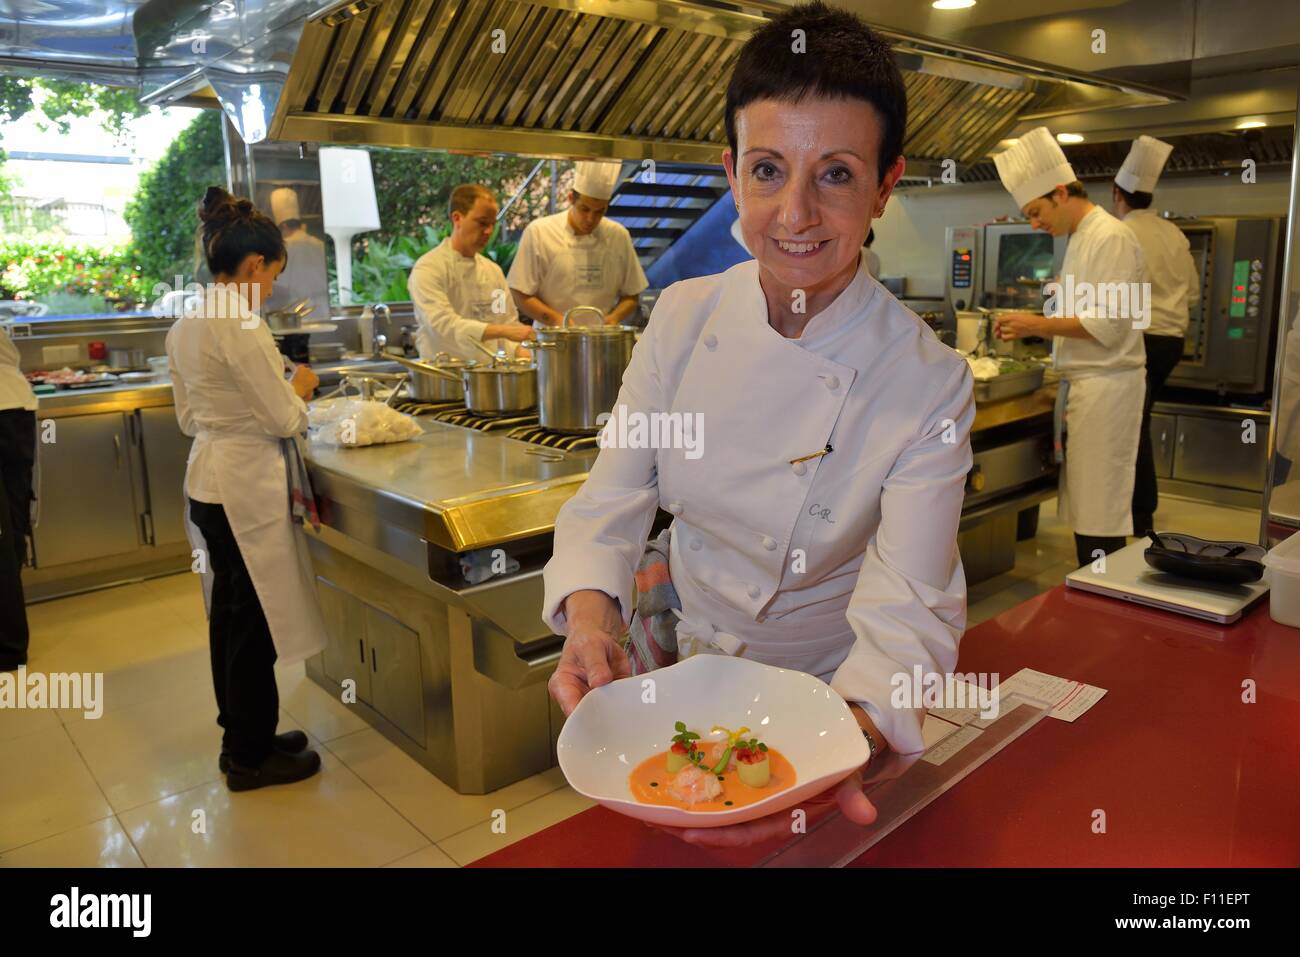 Star chef Carmen Ruscalleda, trois étoiles au guide Michelin, dans la cuisine de son restaurant Sant Pau, Sant Pol de Mar, Catalogne, Espagne Banque D'Images